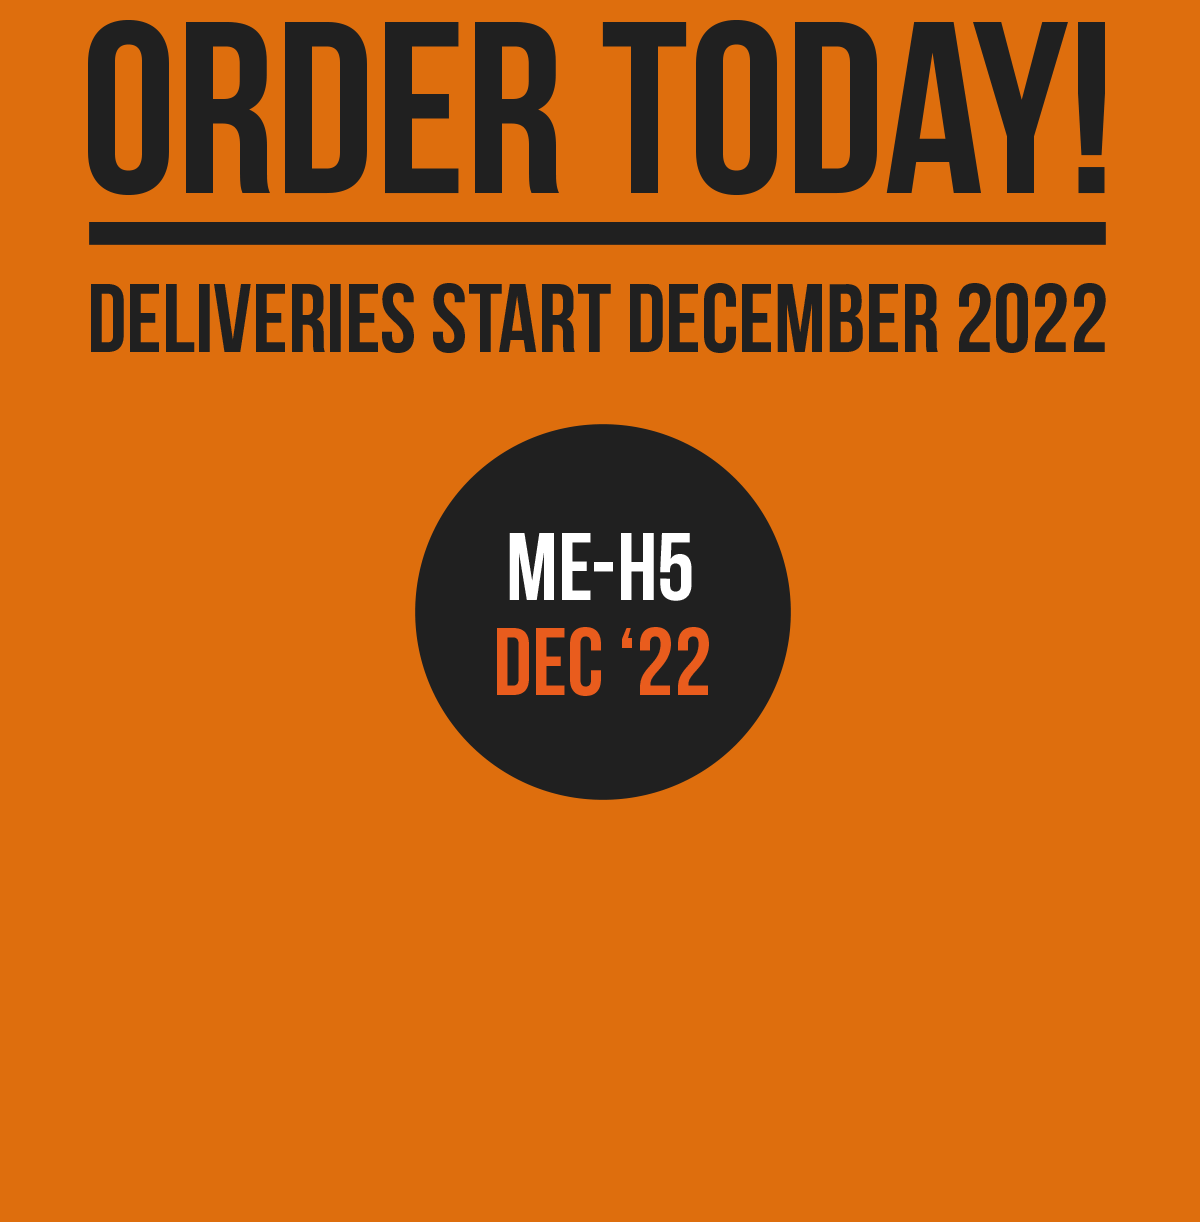 Order Today! Deliveries start Dec 22. ME-H5